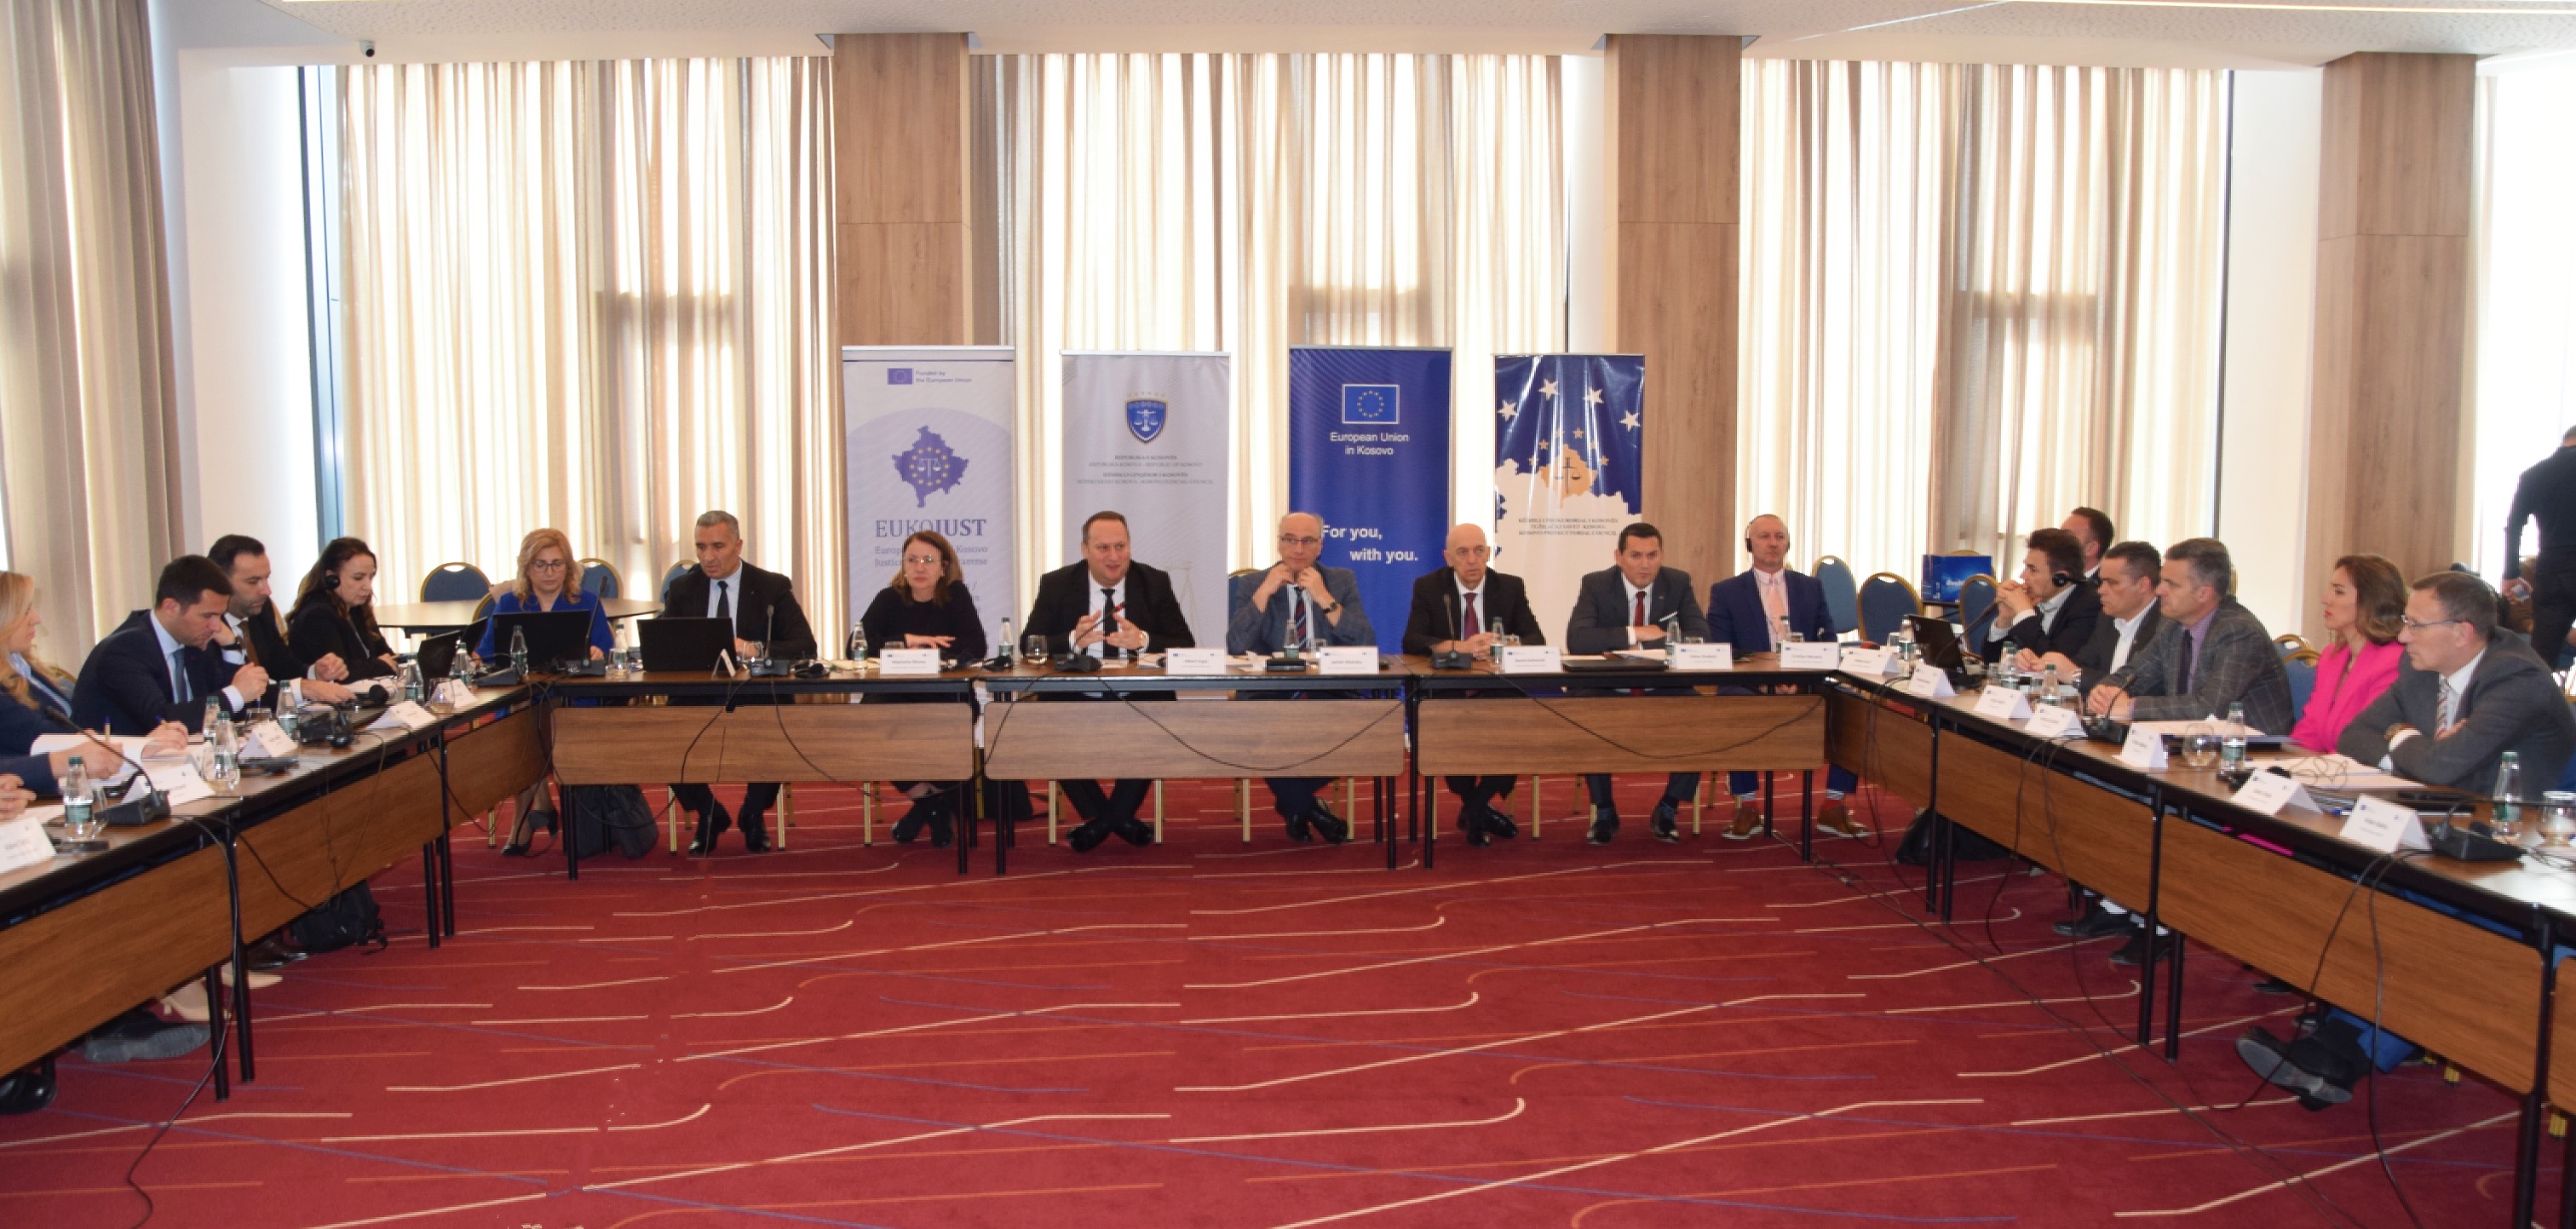 Mbahet takimi i përbashkët në mes të Këshillit Gjyqësor të Kosovës dhe Këshillit Prokurorial të Kosovës